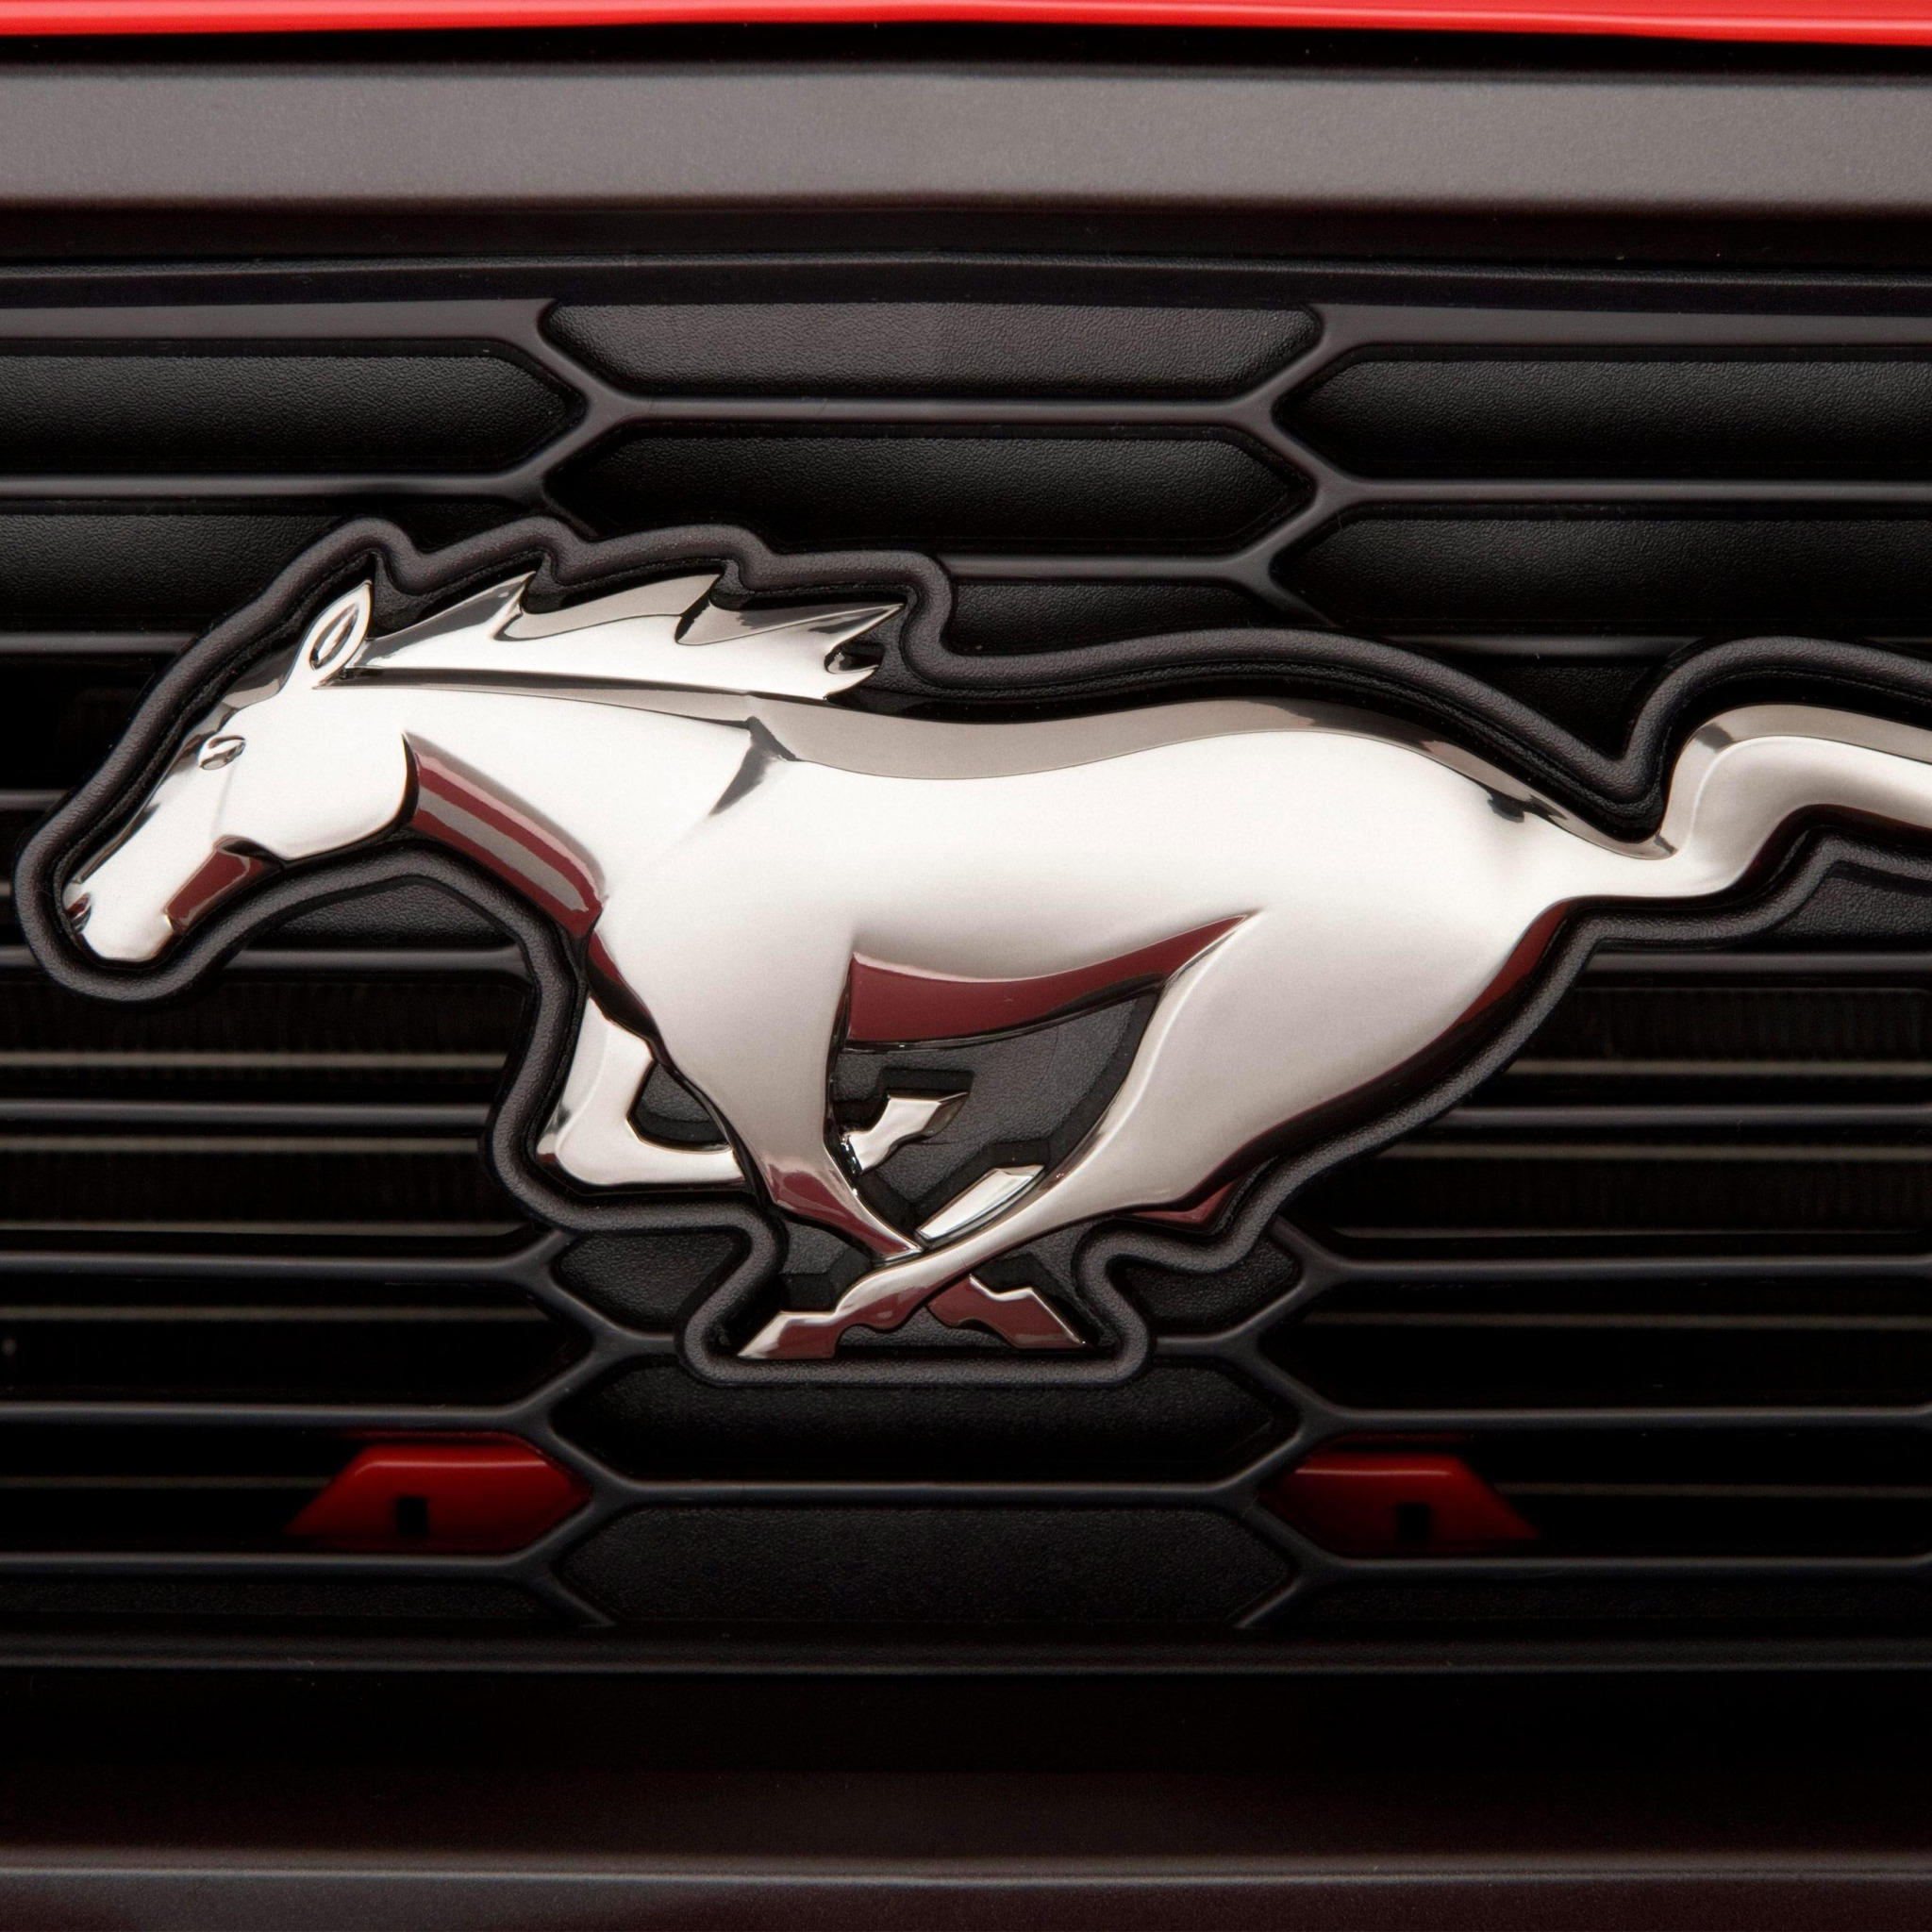 Буквы мустанг. Ford Mustang марка. Шильд Форд Мустанг. Форд Мустанг эмблема. Знак машины Форд Мустанг.